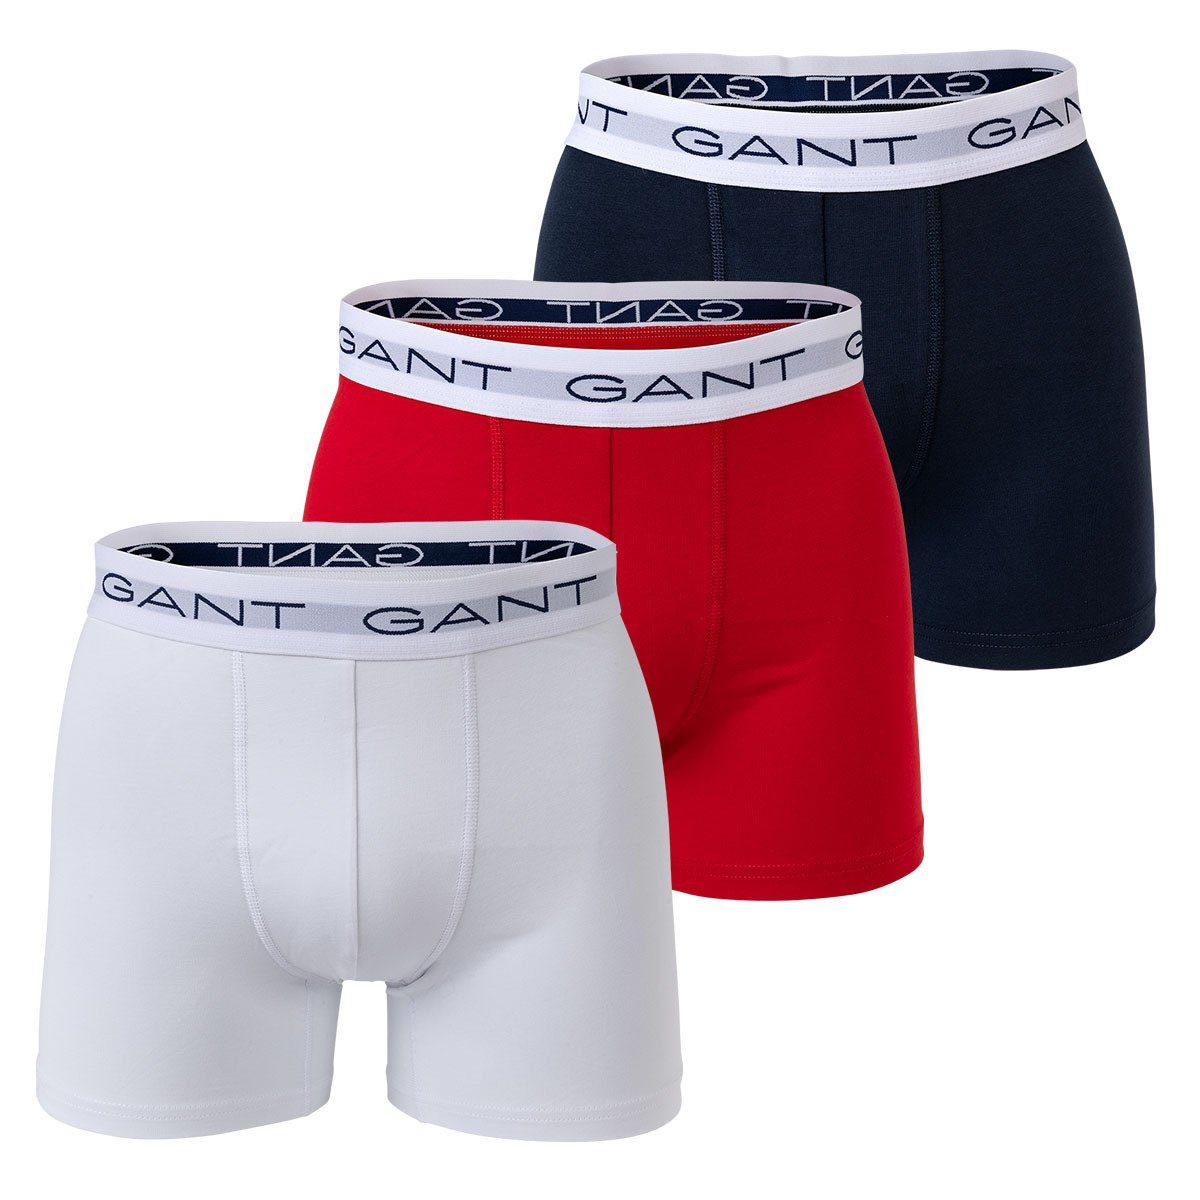 Gant Boxer Herren Boxer Shorts, 3er Pack - Boxer Briefs, Jersey-Qualität  aus elastischer Baumwolle